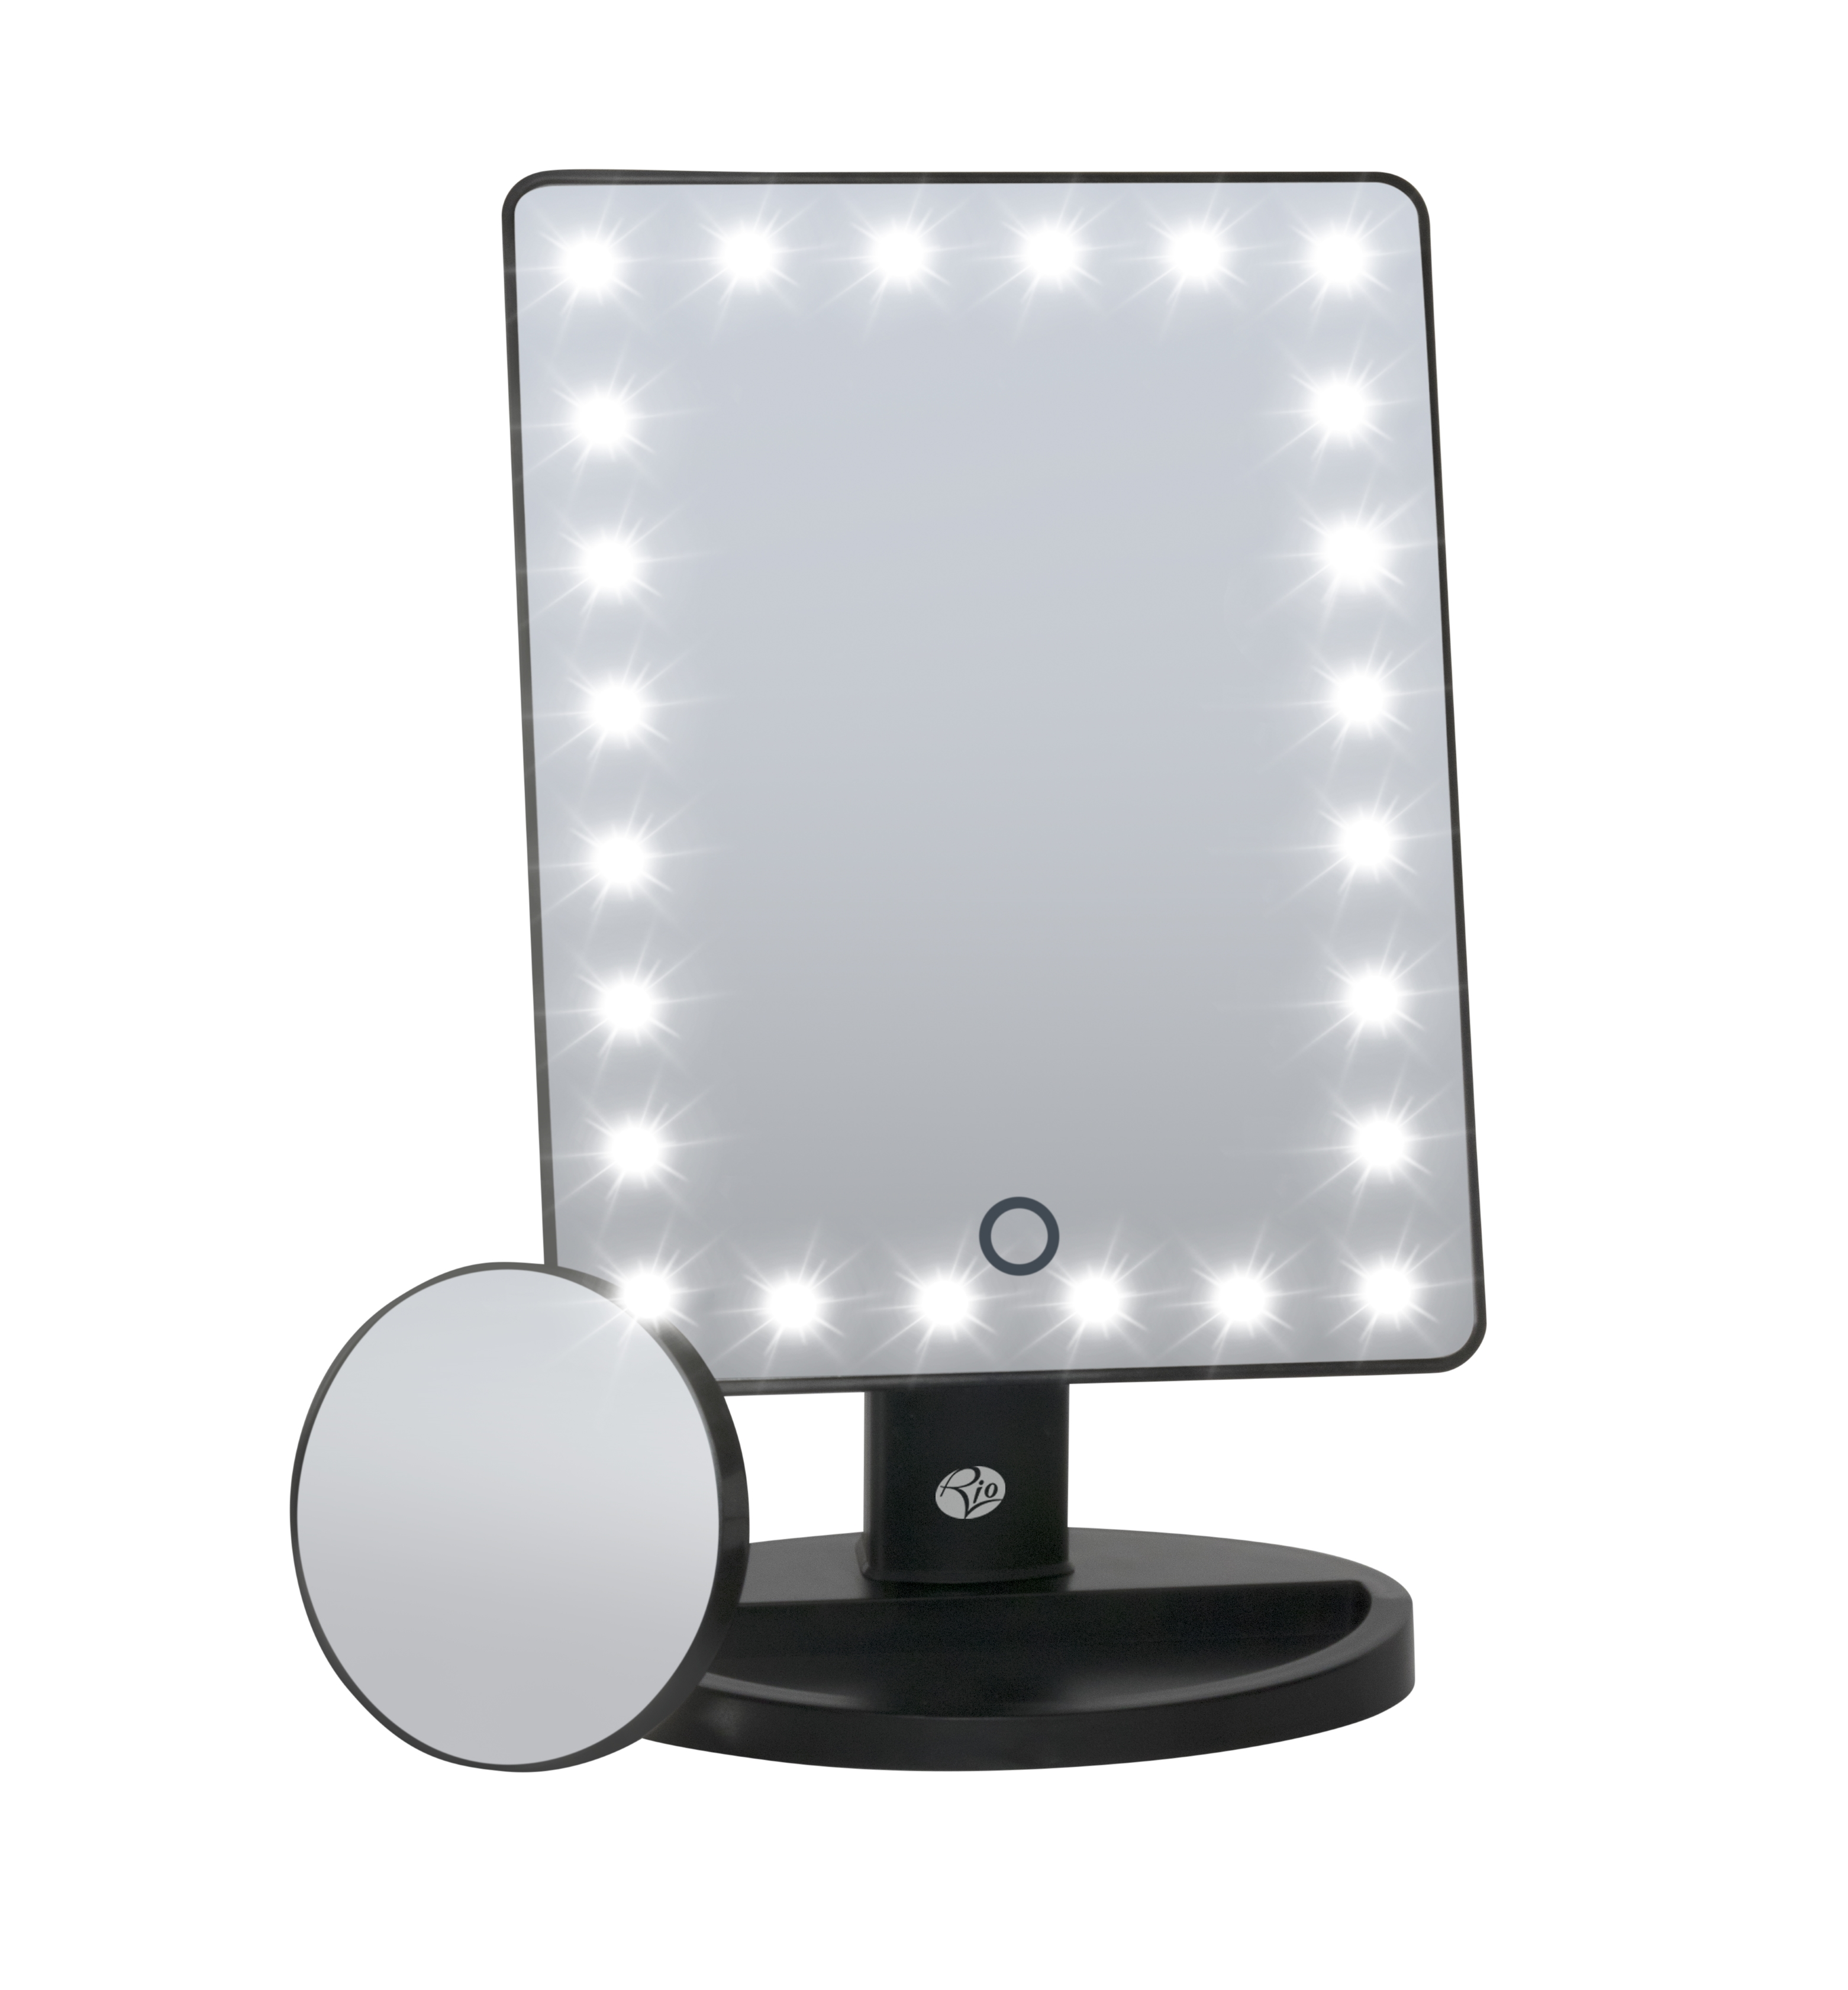 Kosmetikspiegel inkl. BEAUTY abnehmbar dimmbar Vergrößerungsspiegel RIO 10fach MMSP Spiegel schwarz LED-Beleuchtung